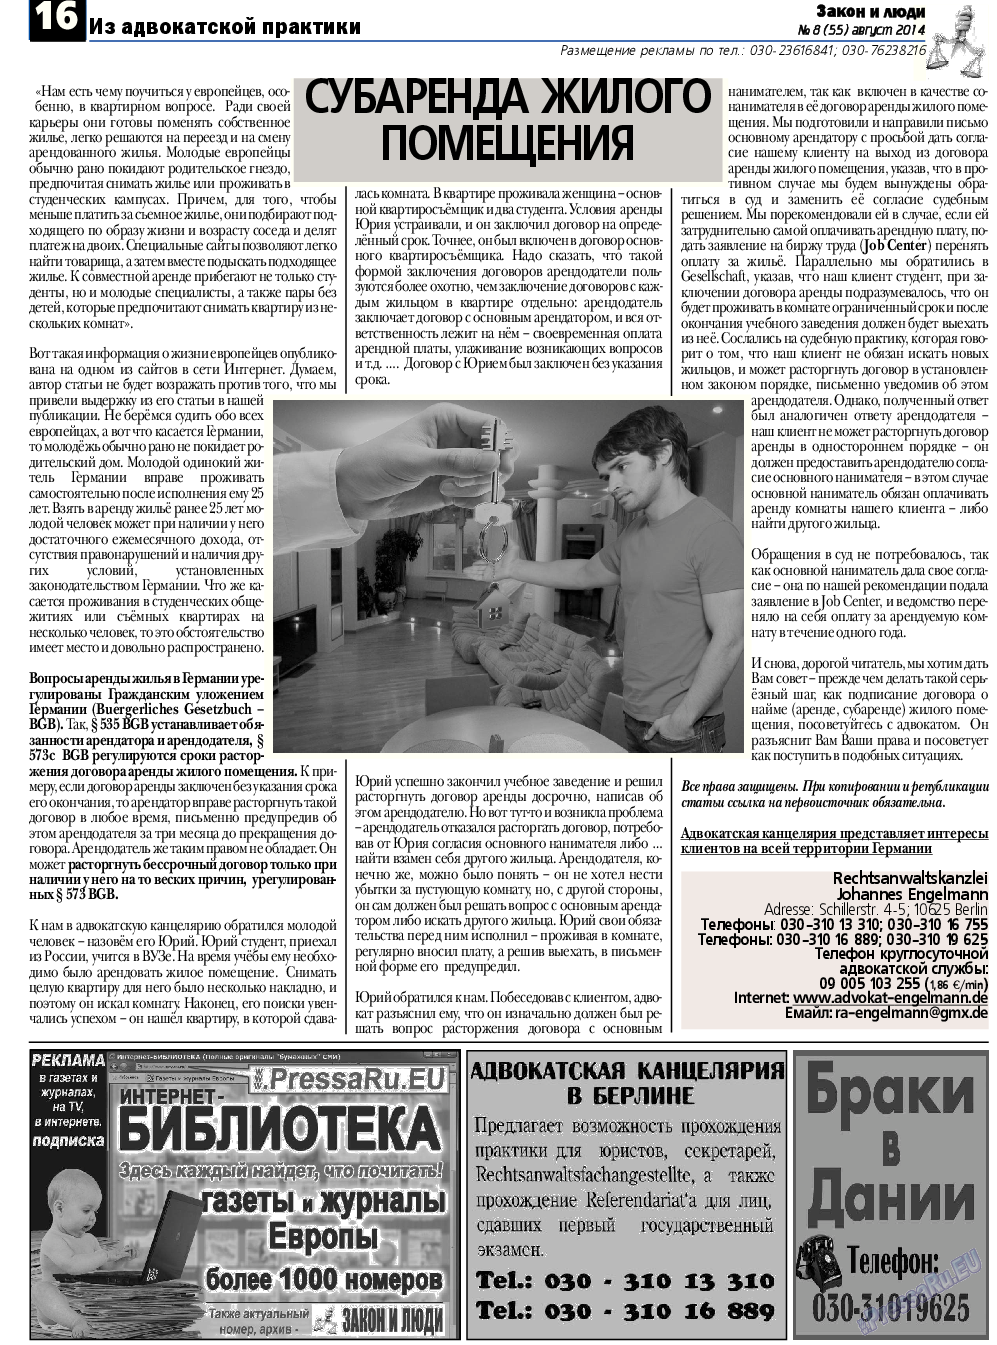 Закон и люди, газета. 2014 №8 стр.16